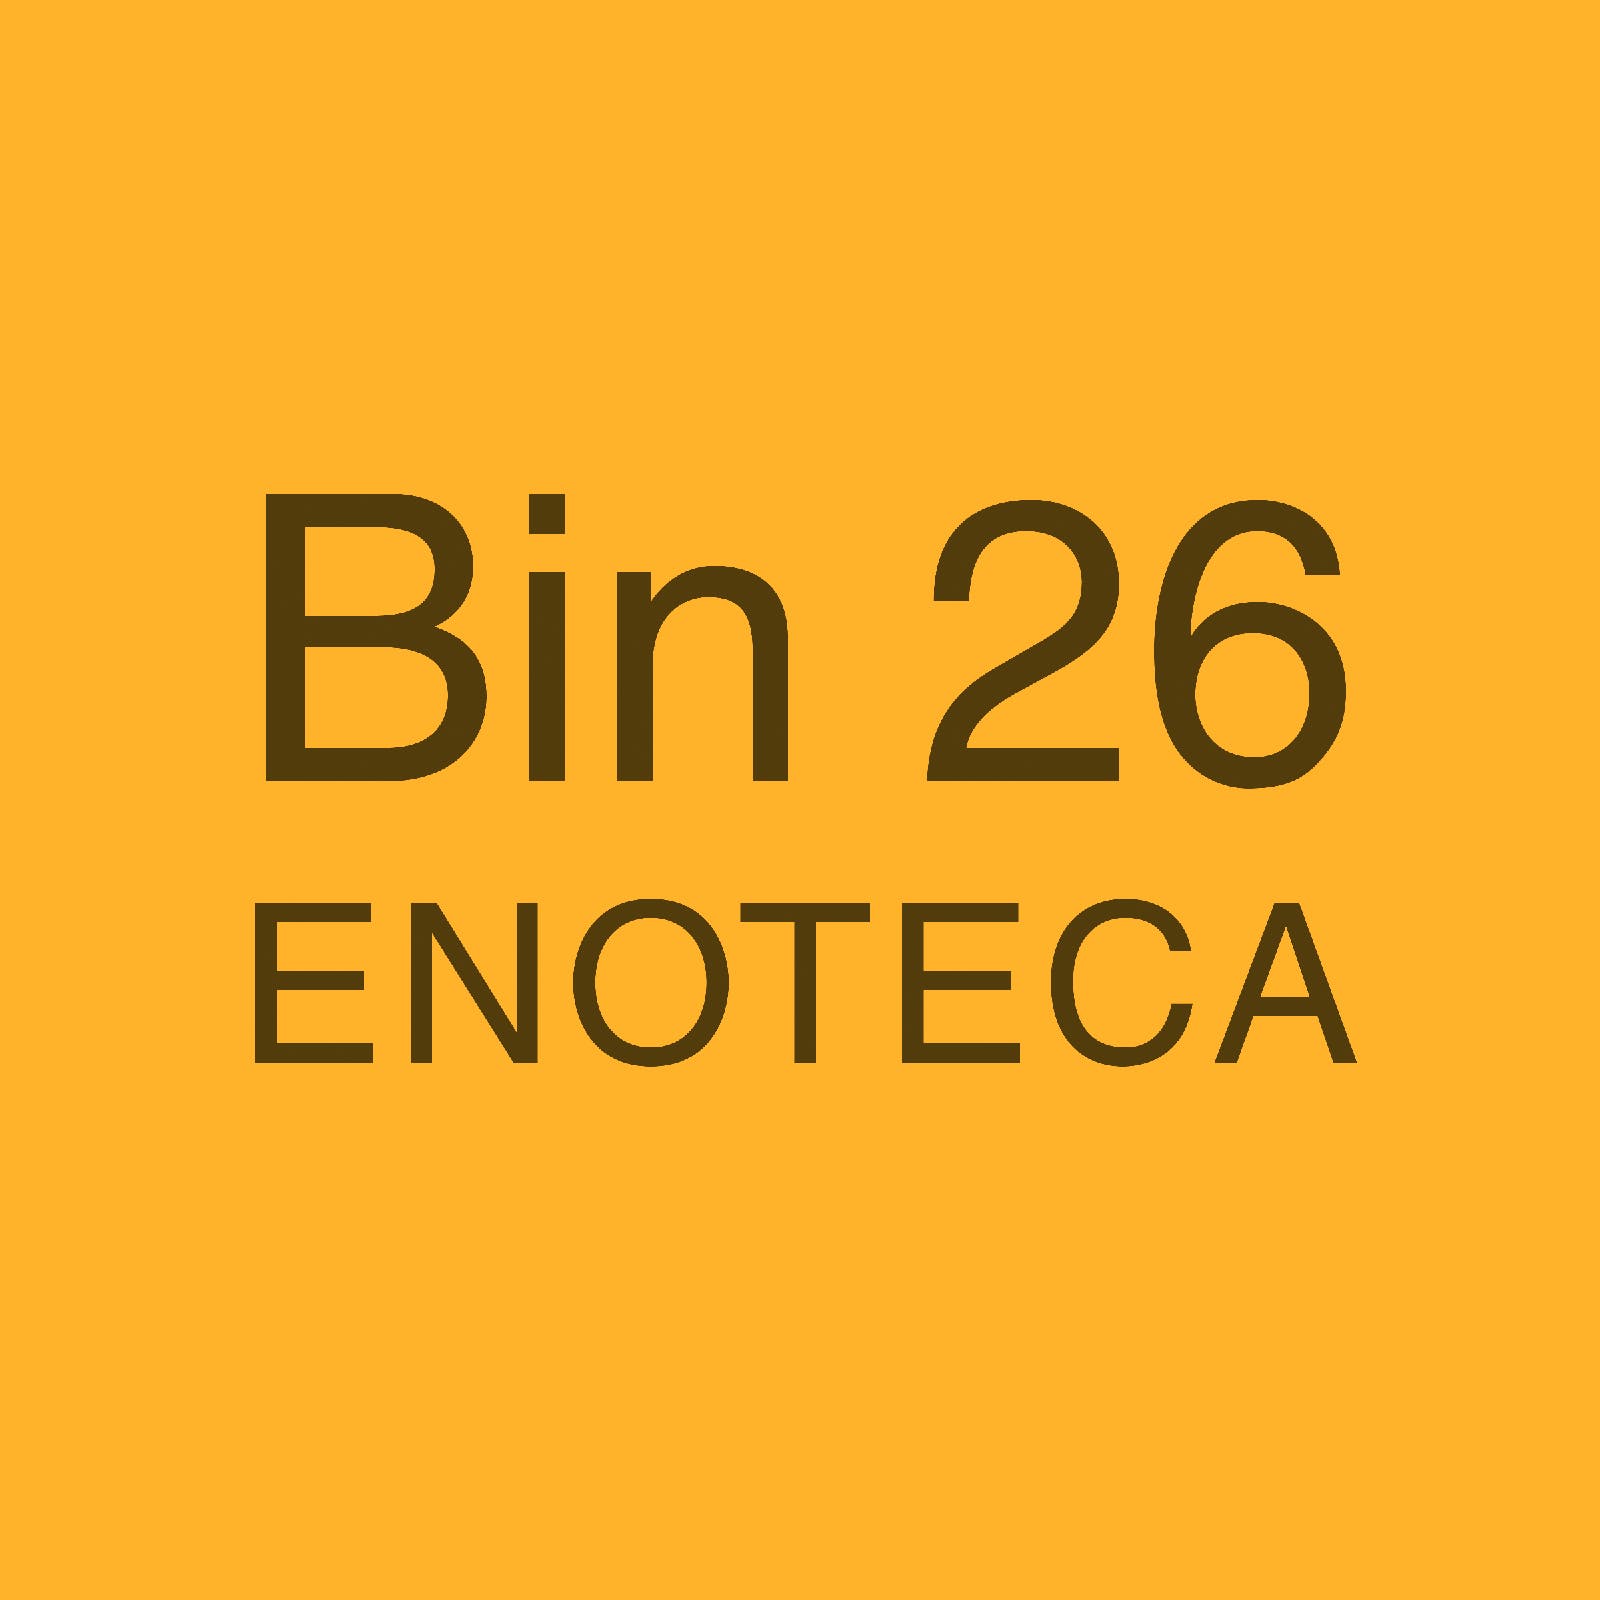 Bin 26 Enoteca Home